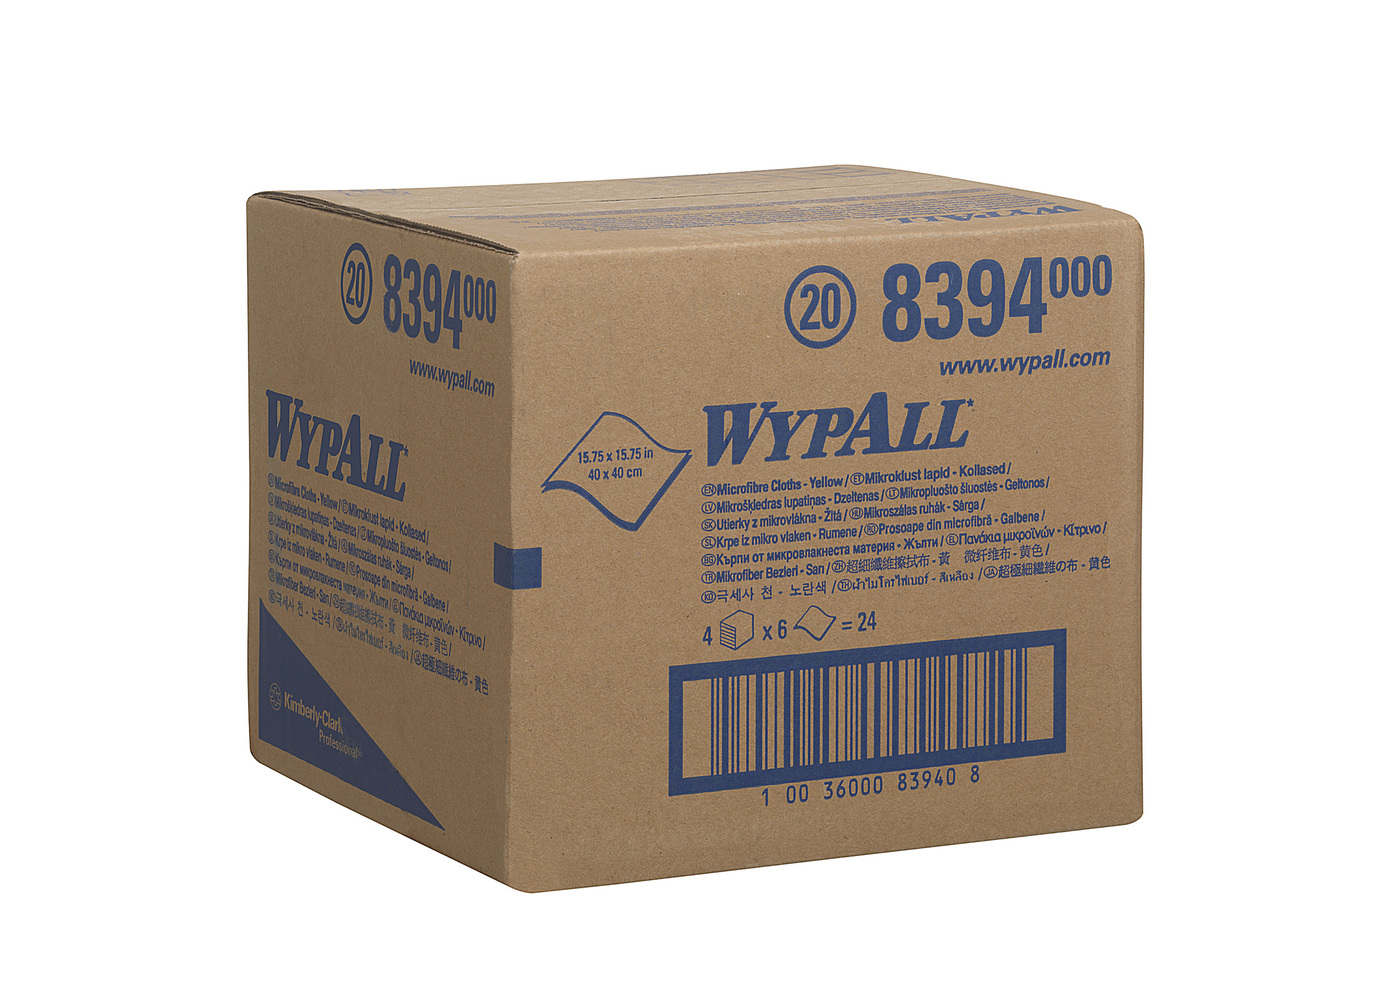 WypAll® Mikrofasertücher 8394 - 6 gelbe, 40 x 40 cm große Tücher pro Päckchen (Karton enthält 4 Päckchen). - 8394